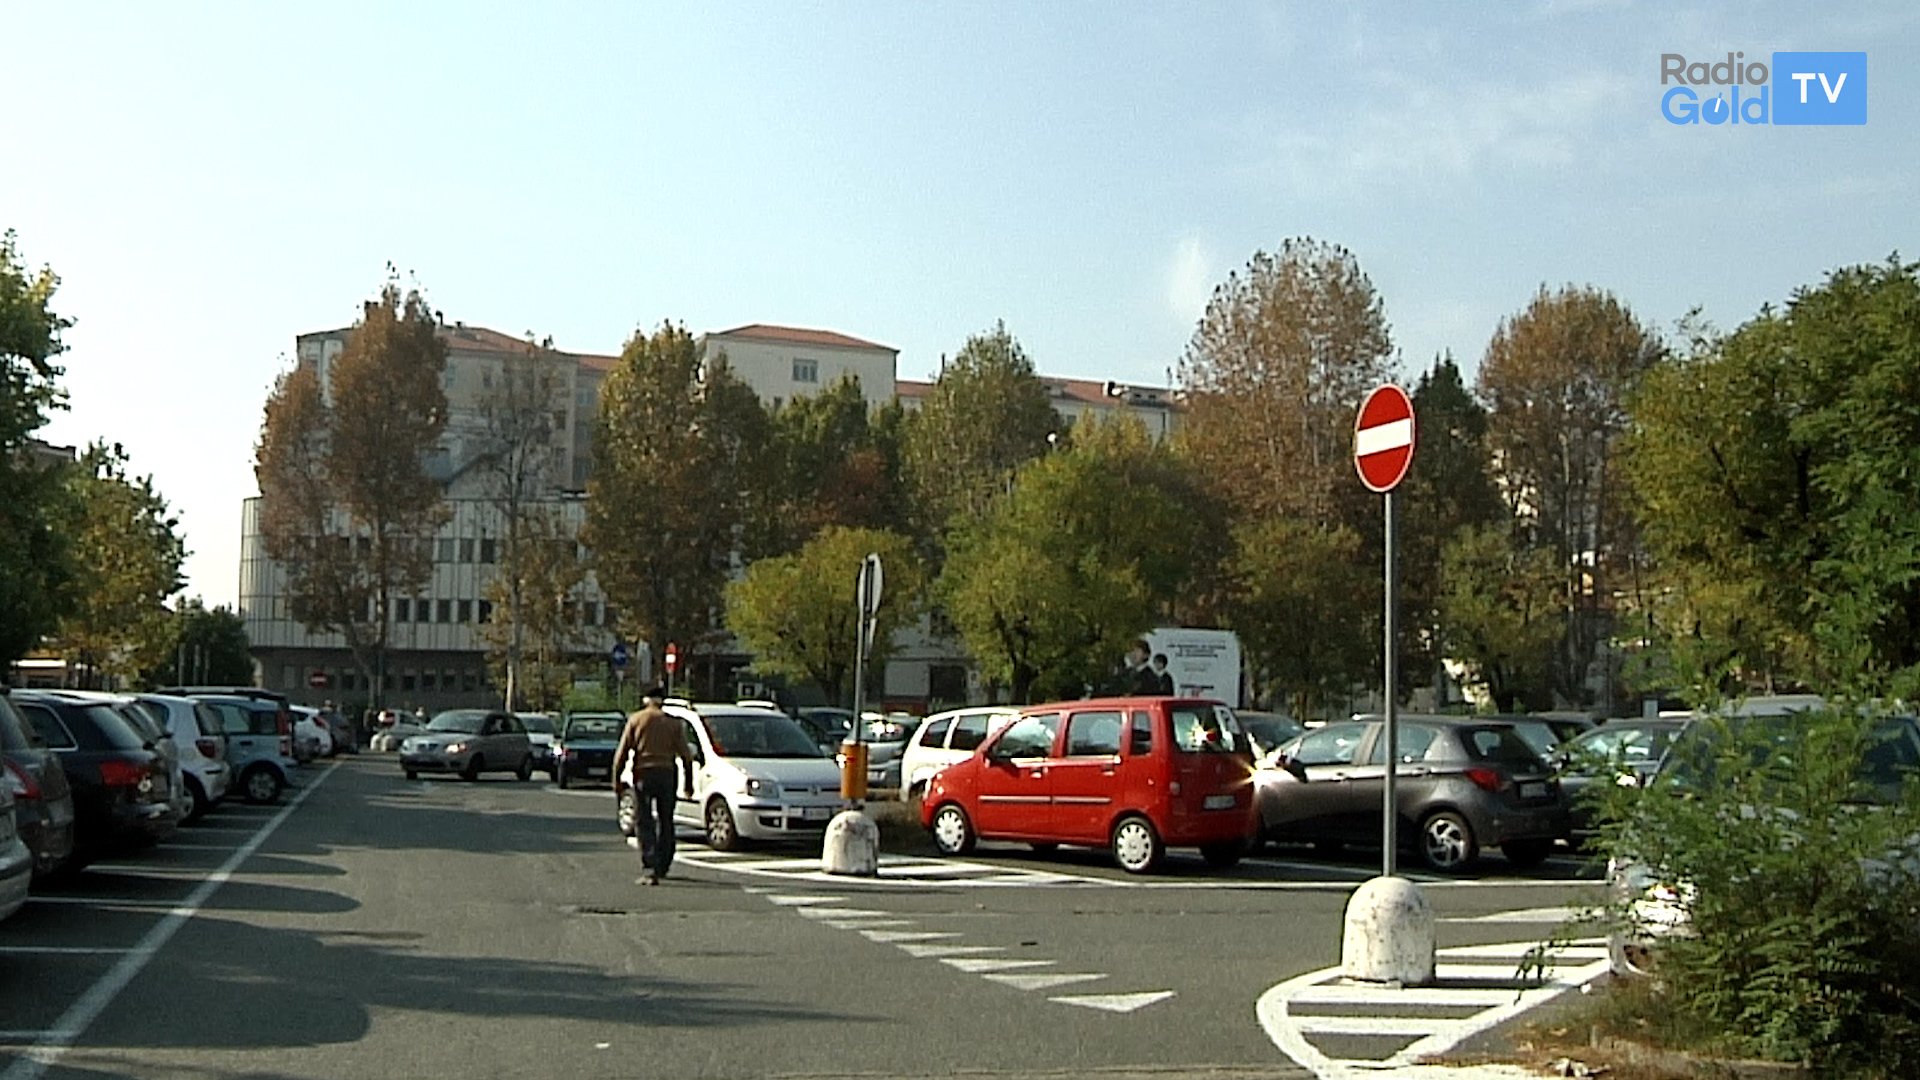 Luci e telecamere a Piazzale Berlinguer: passo avanti per avvio lavori